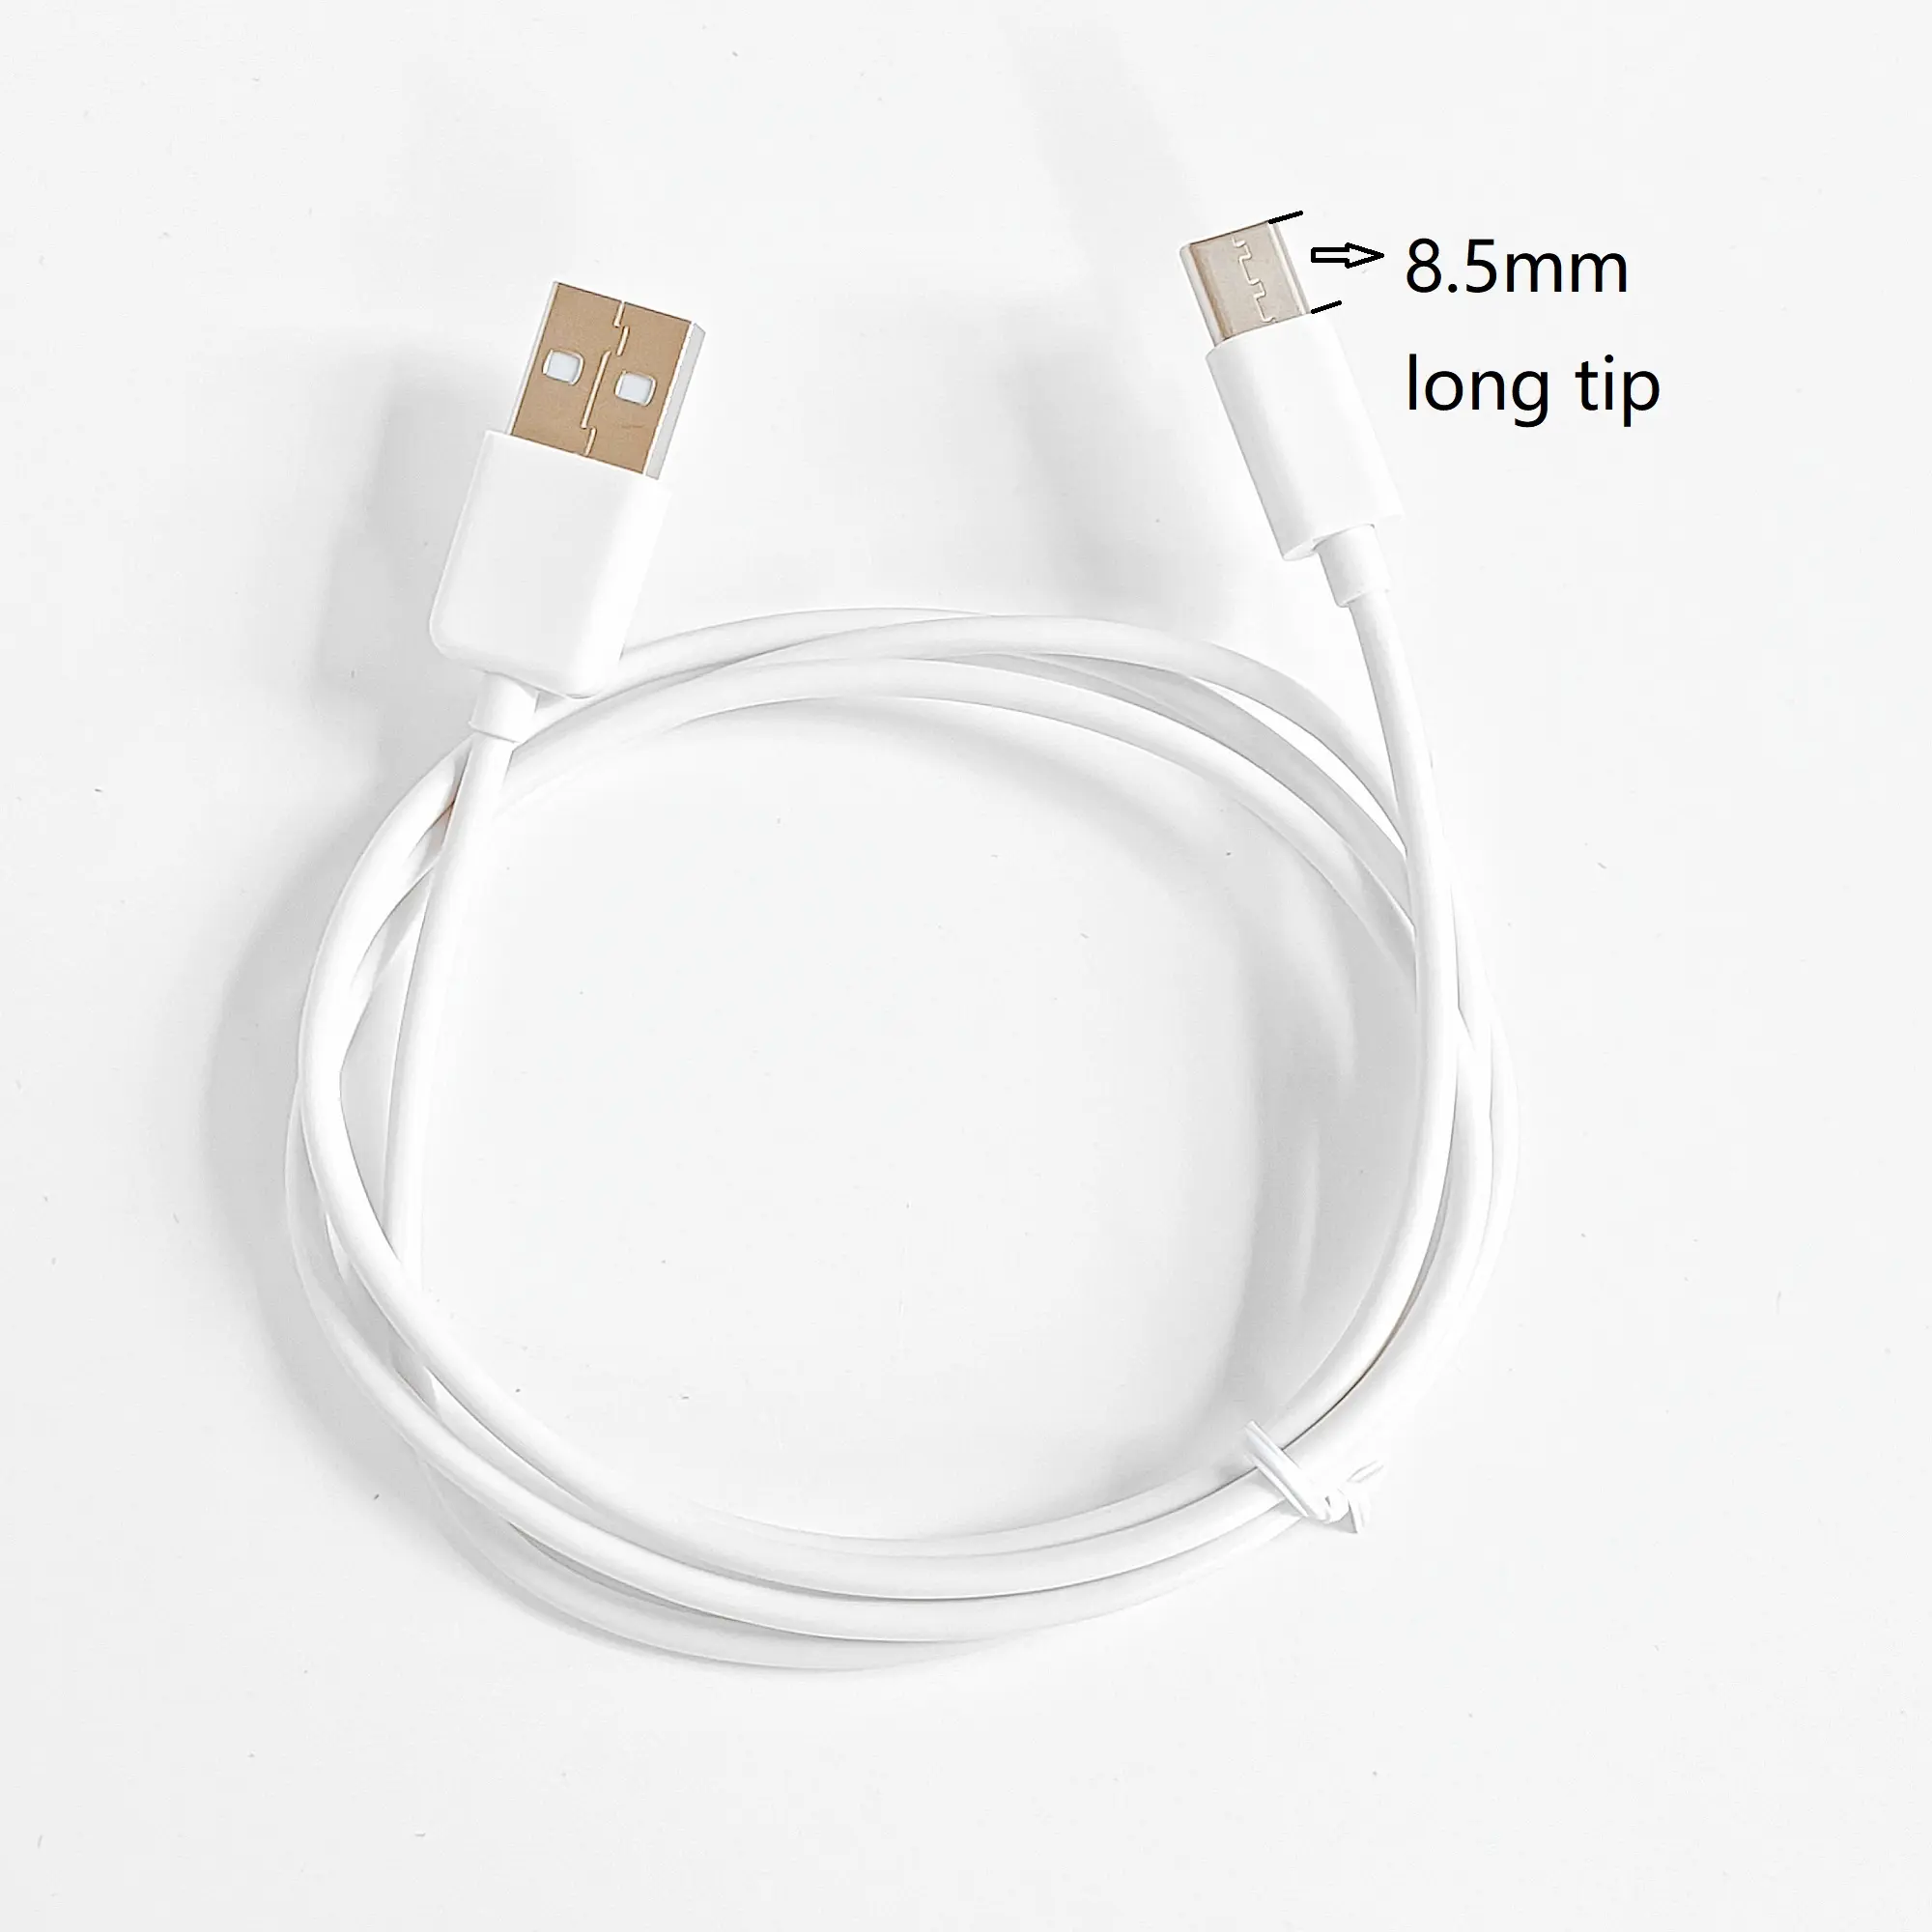 Câble USB de Type C pour transfert de données et charge, 1 mètre, 3 pieds, avec cordon de chargeur USB C à longue pointe de 8.5mm